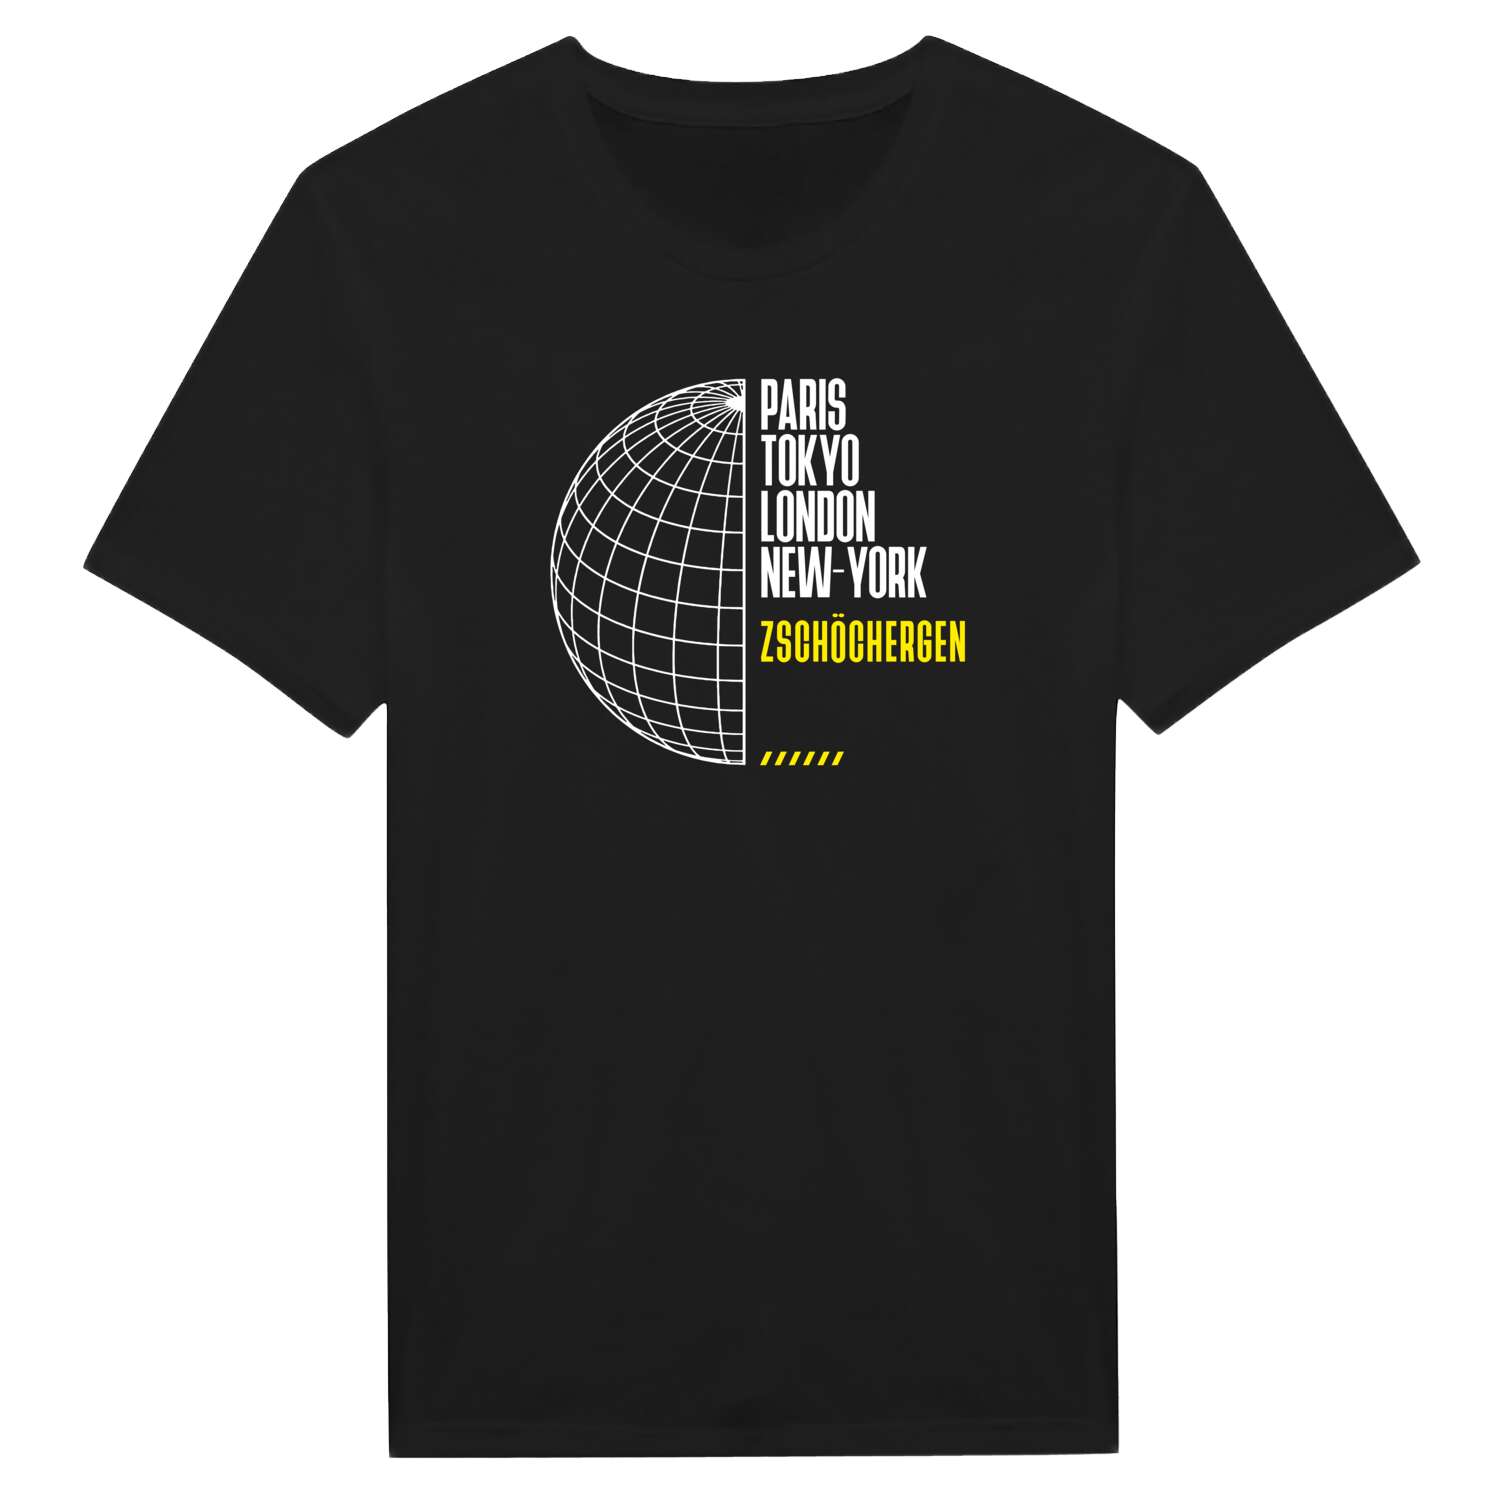 Zschöchergen T-Shirt »Paris Tokyo London«